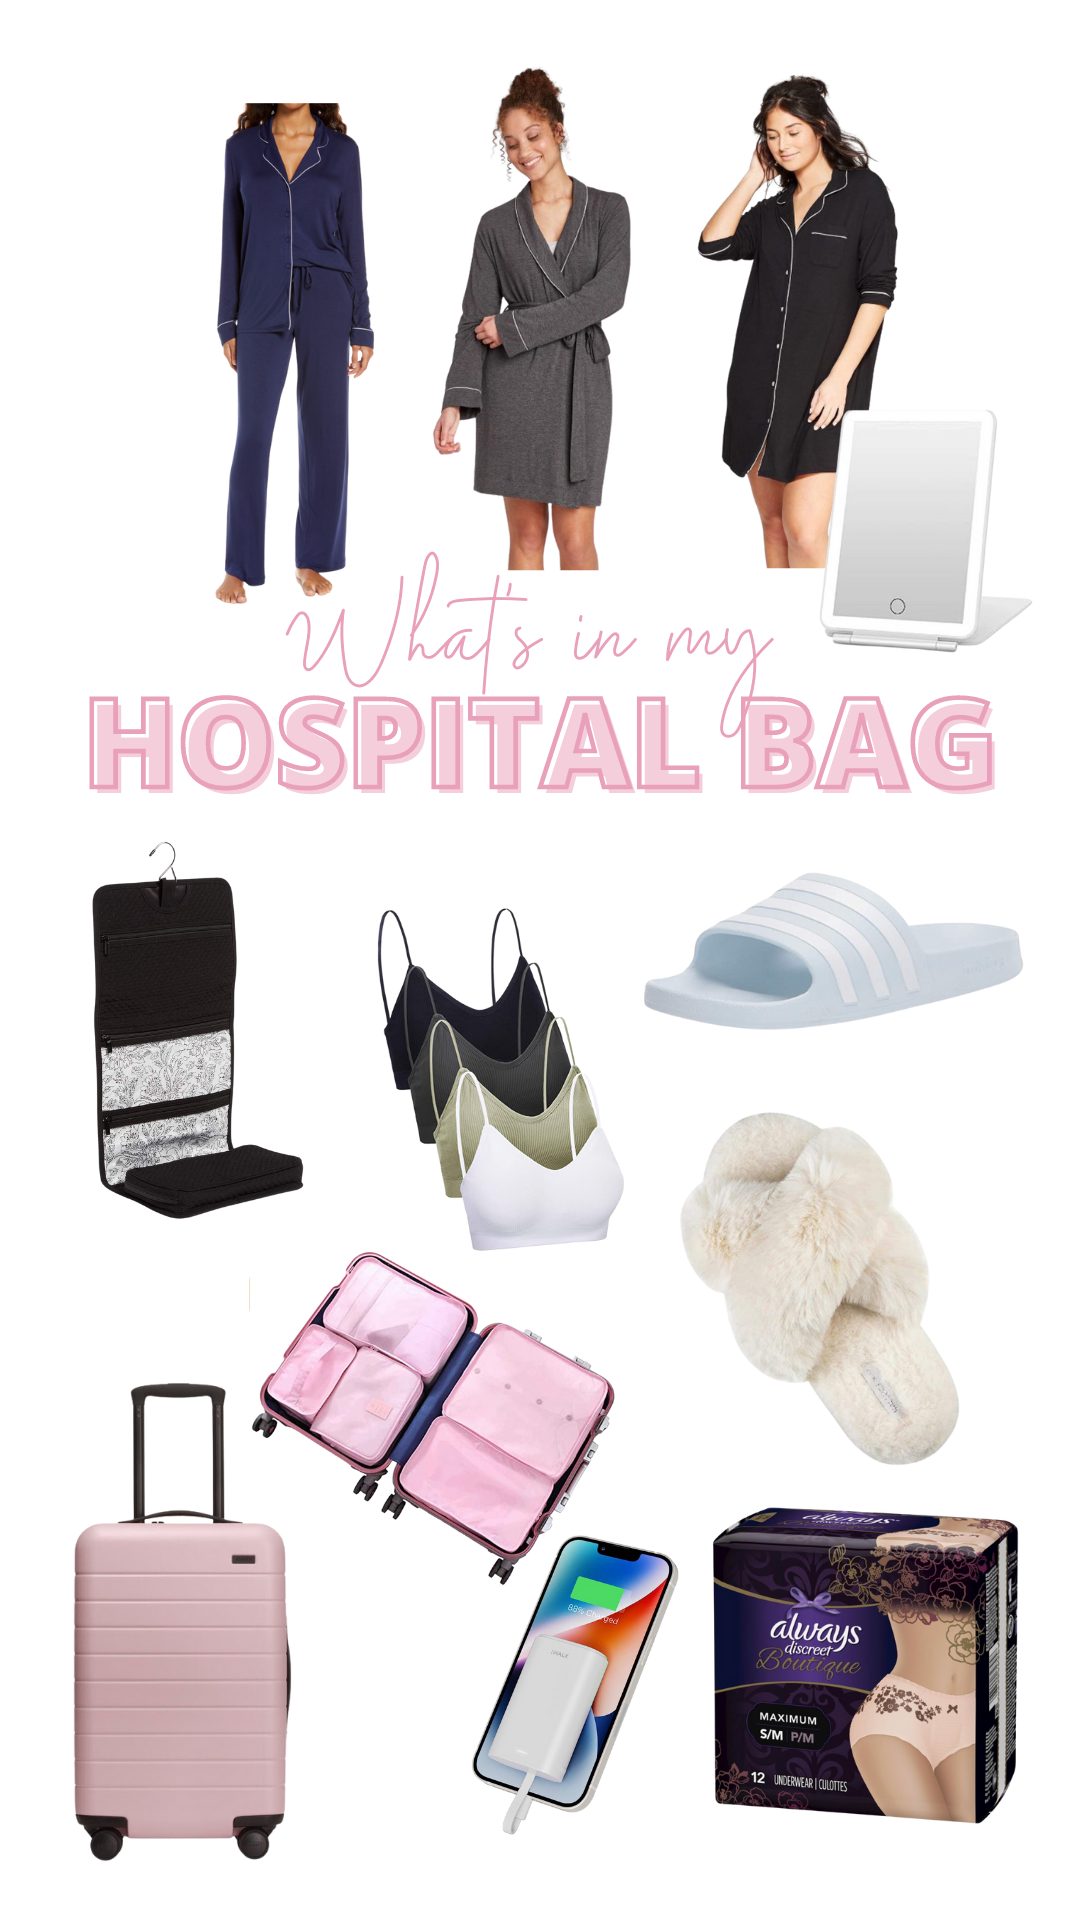 Hospital bag essentials